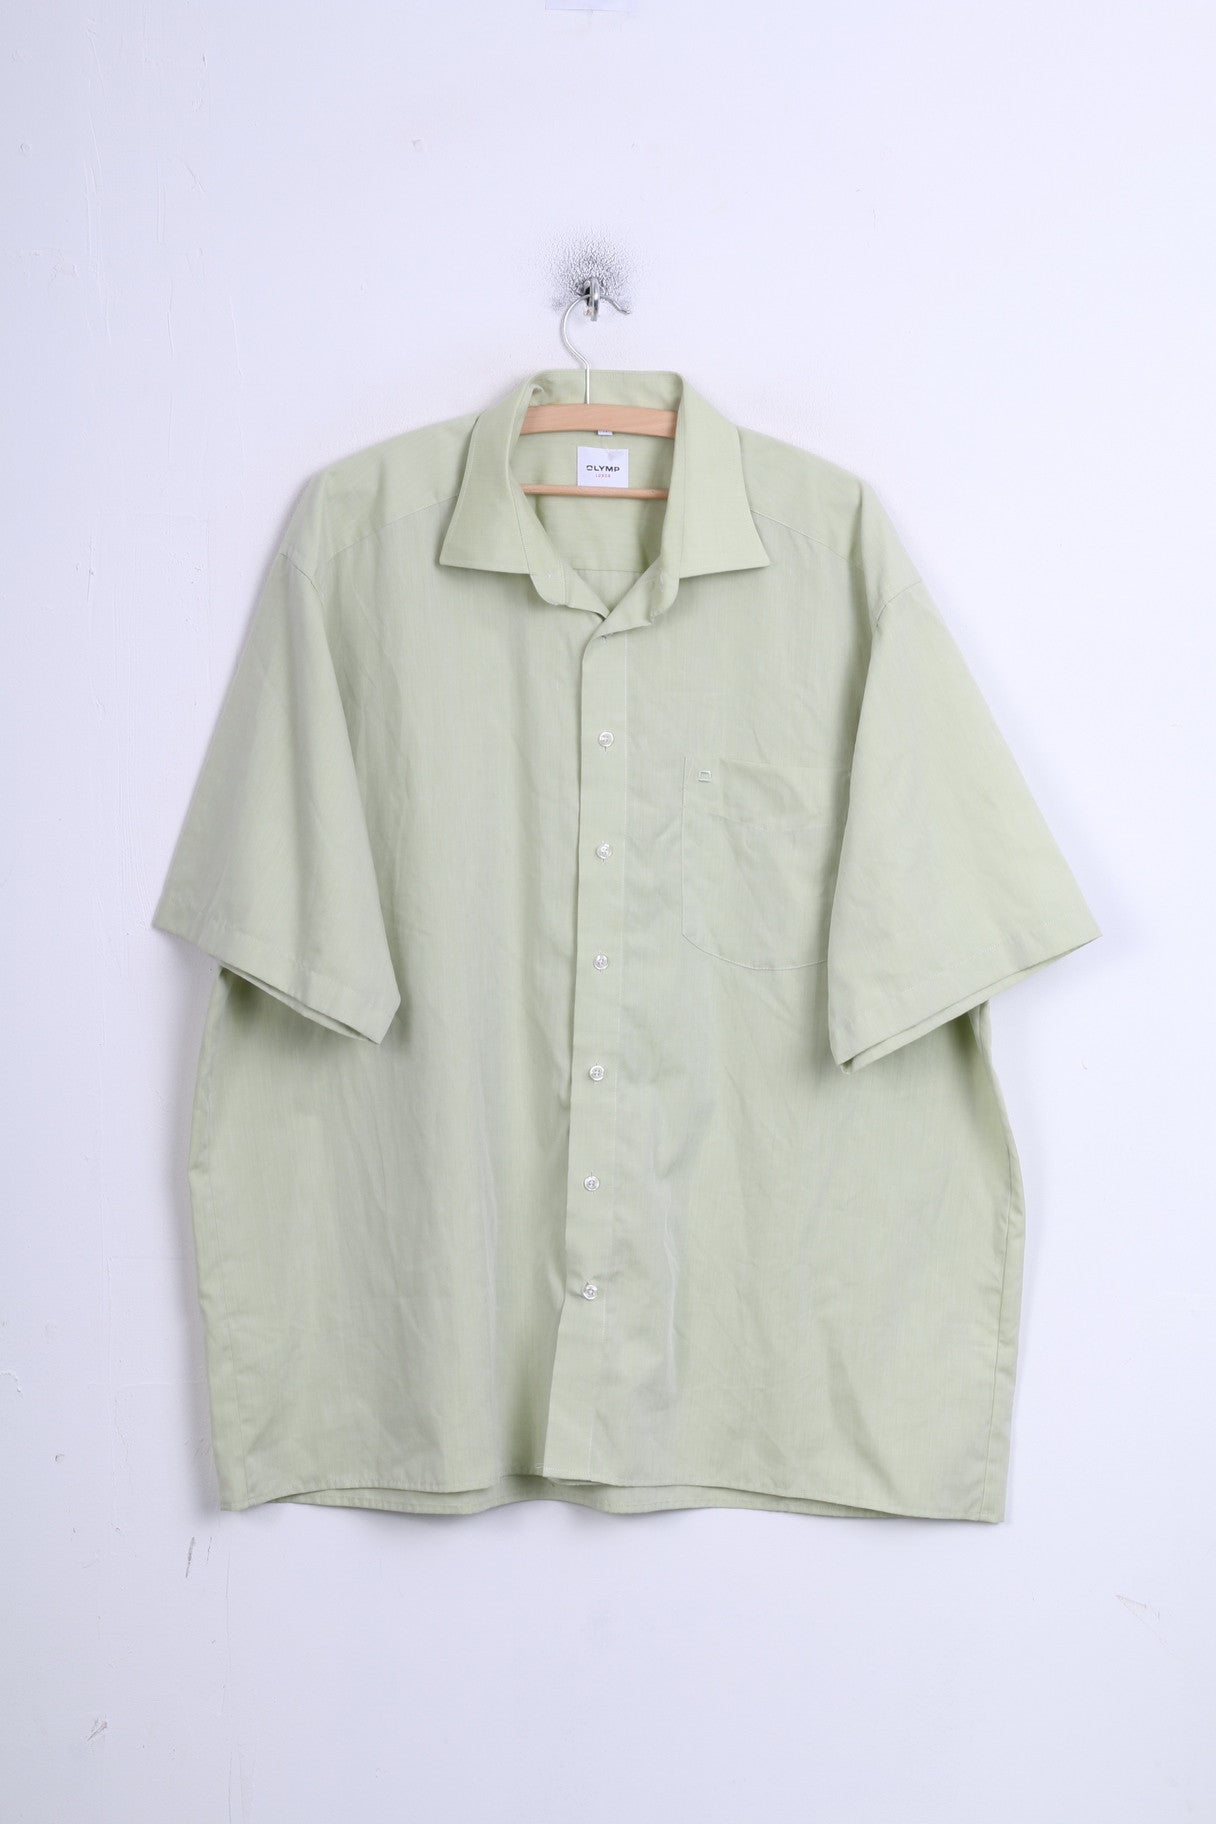 OLYMP Luxor Mens XXL Casual Shirt Green Short Sleeve Standard Collar 45